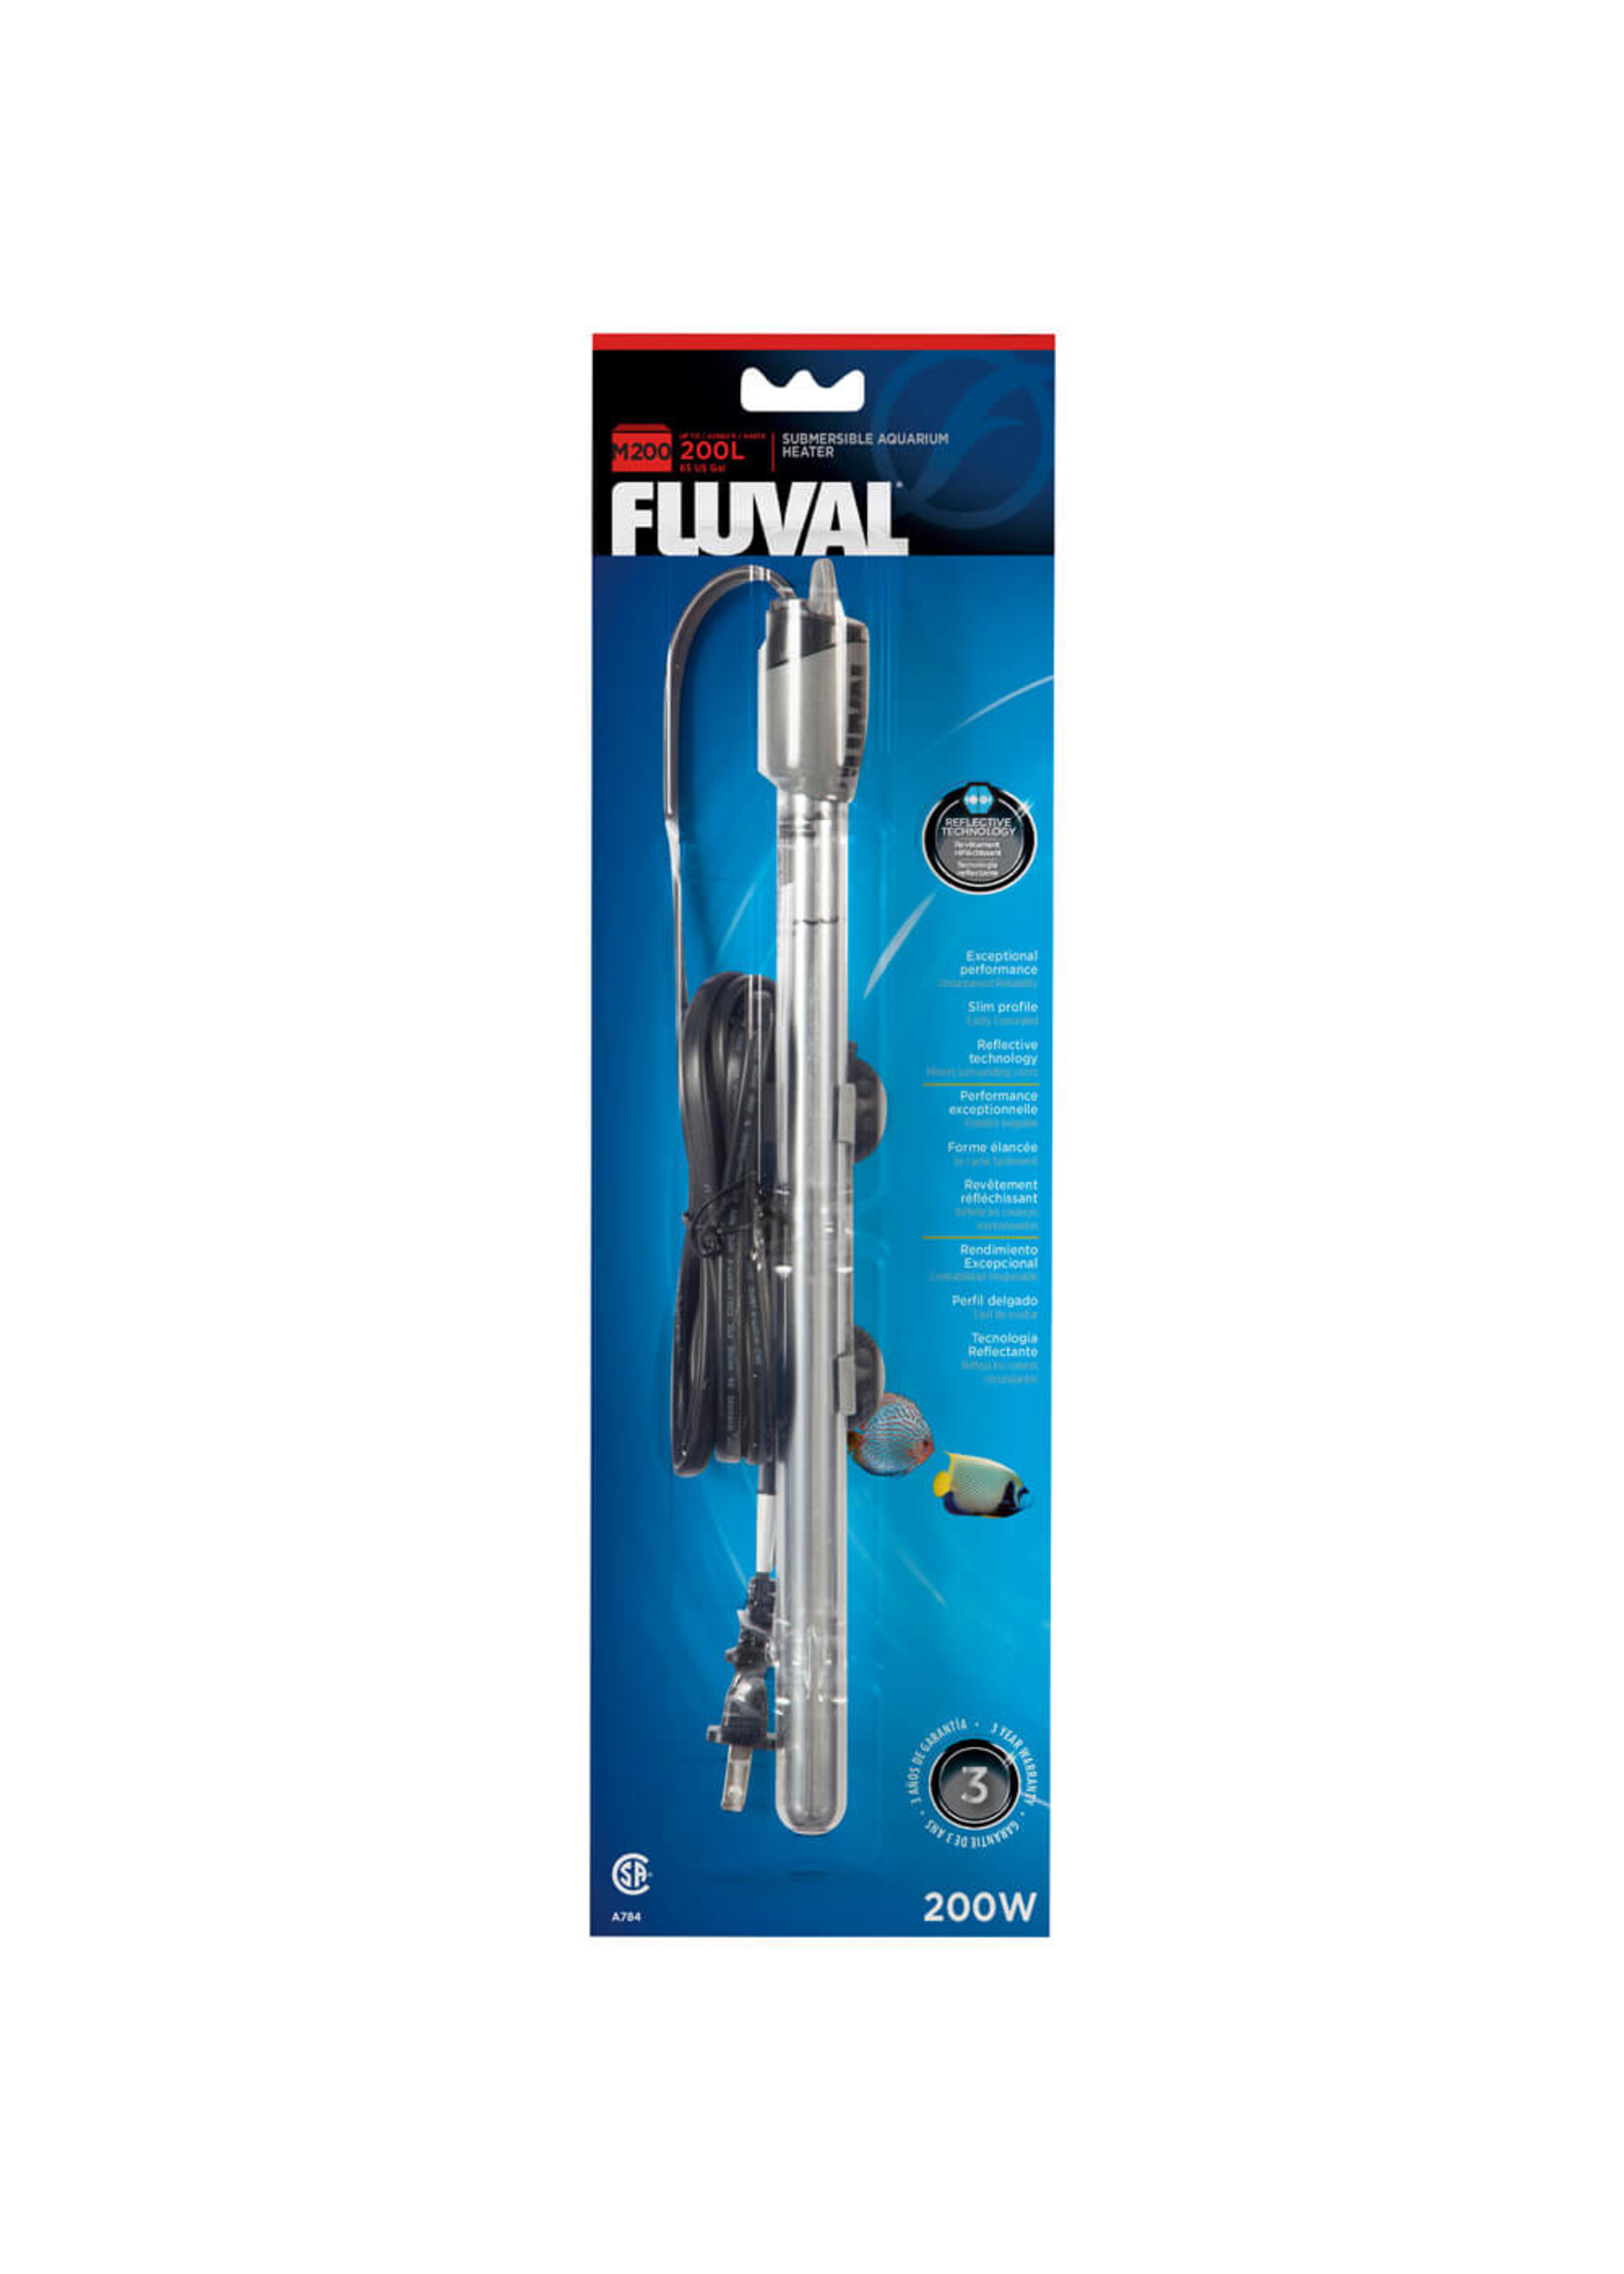 Fluval Fluval Submersible Heater